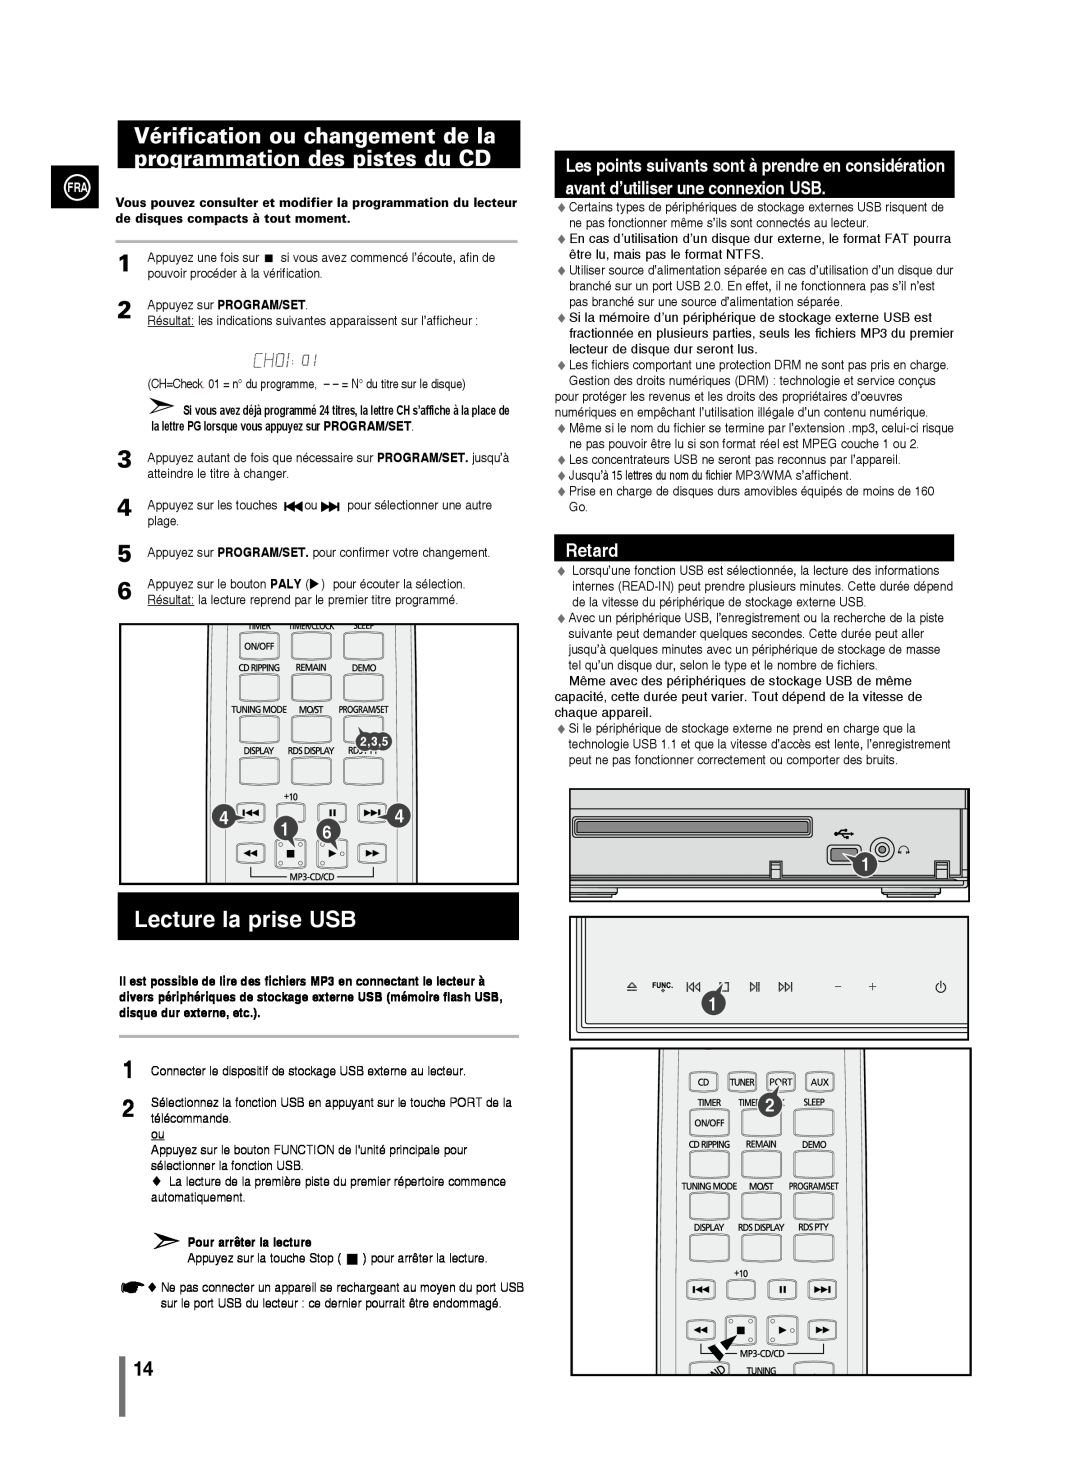 Samsung MM-C430/XEF Vérification ou changement de la programmation des pistes du CD, Lecture la prise USB, Retard, 2,3,5 